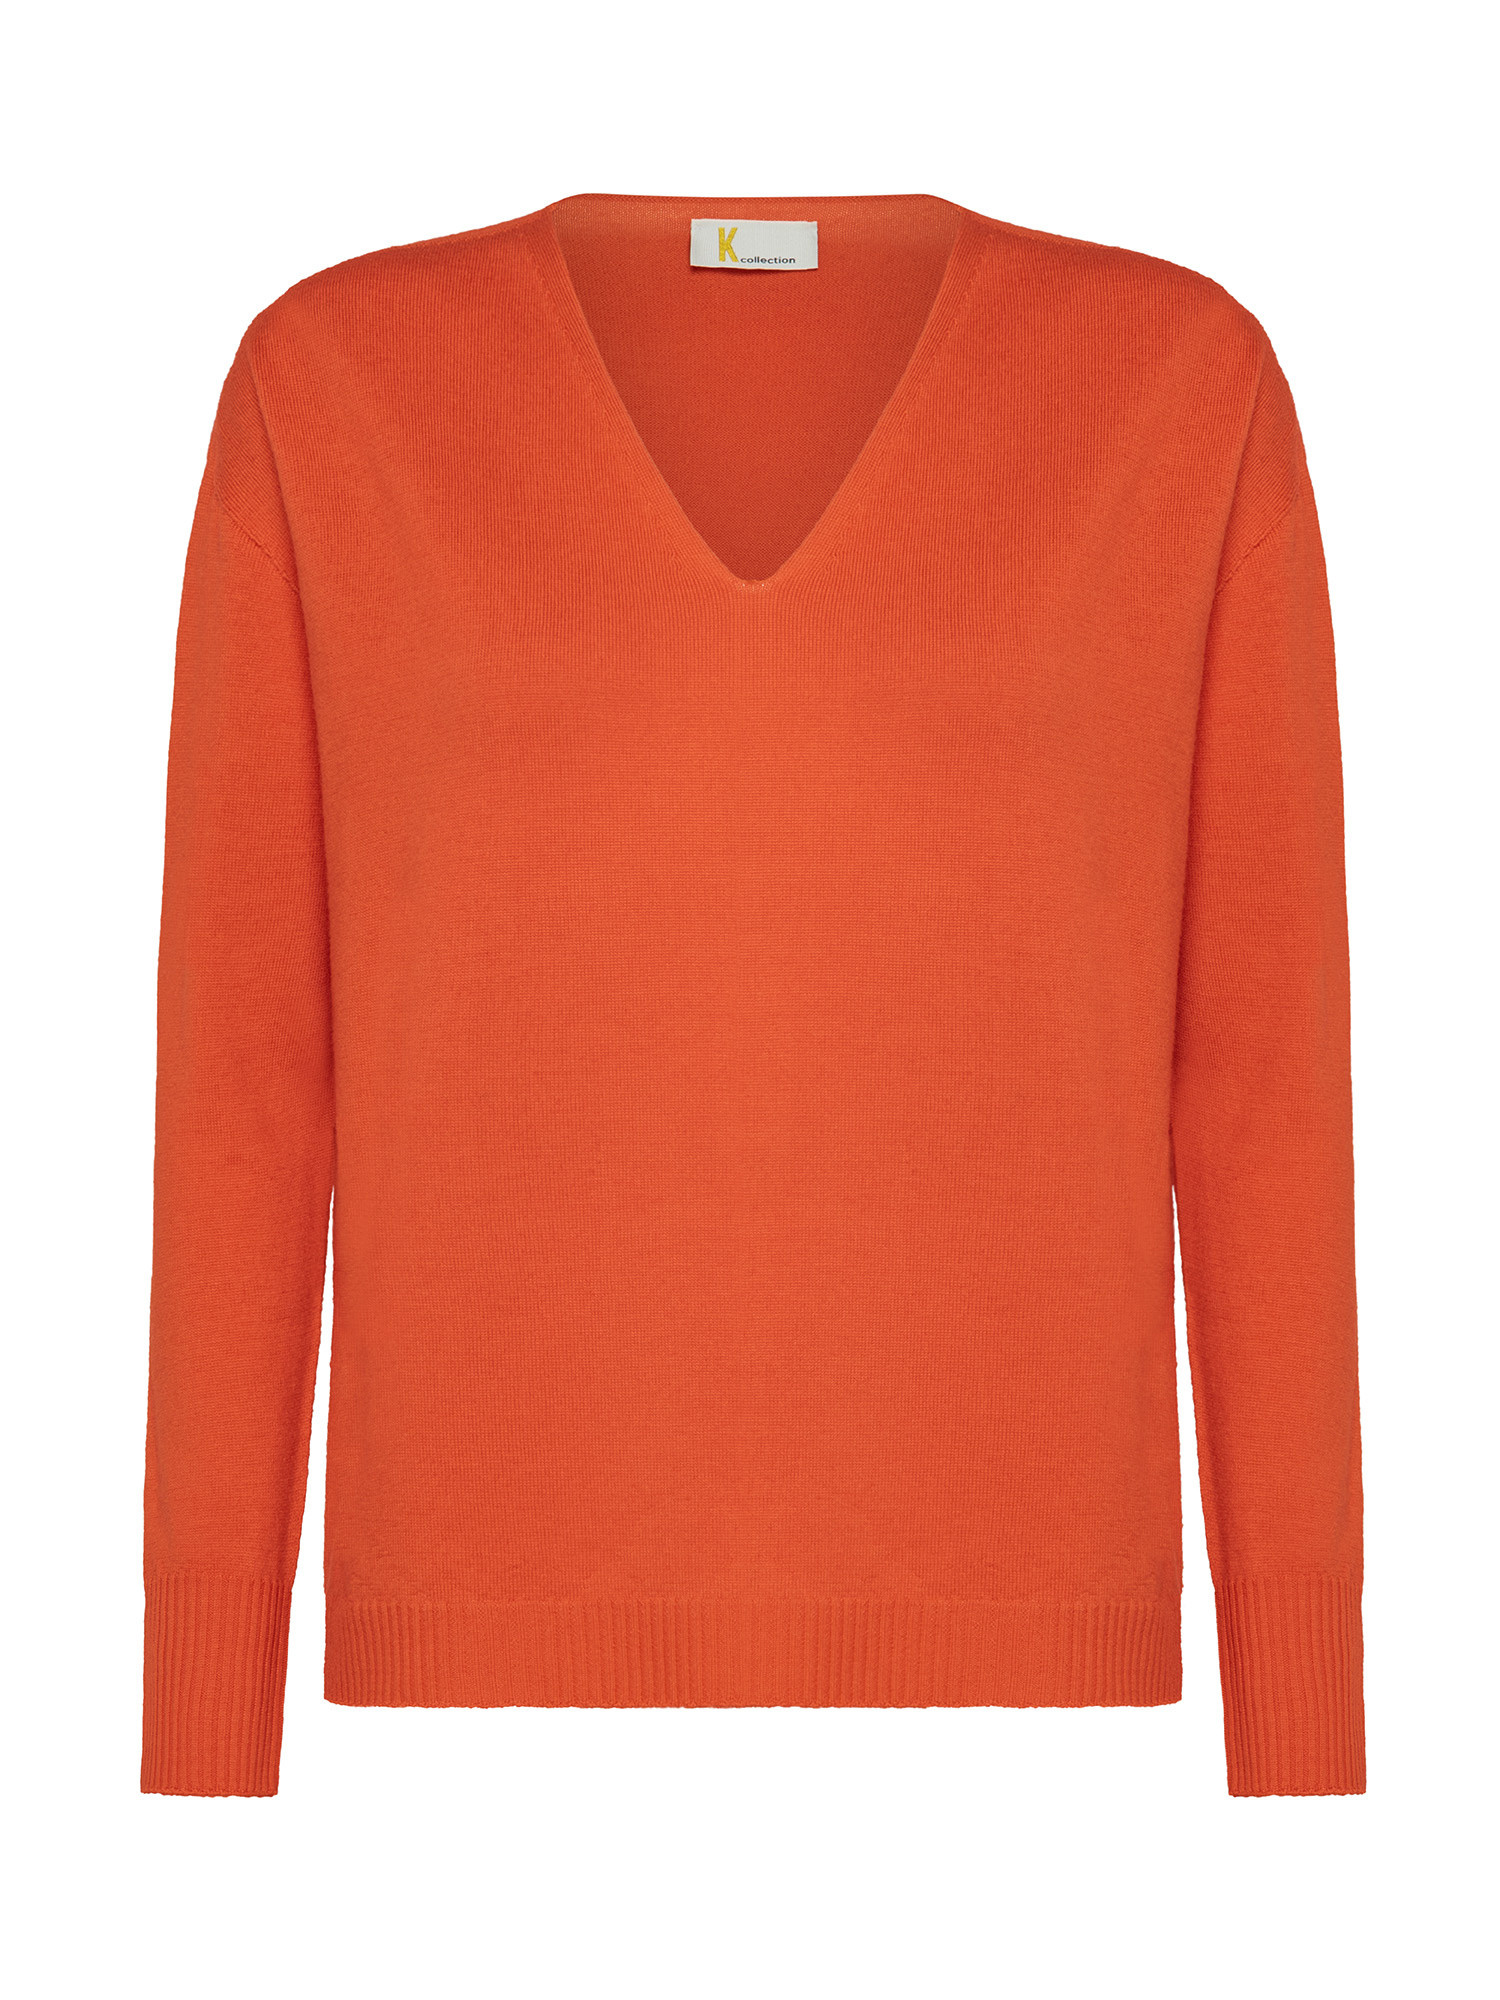 K Collection - V-neck sweater, Orange, large image number 0